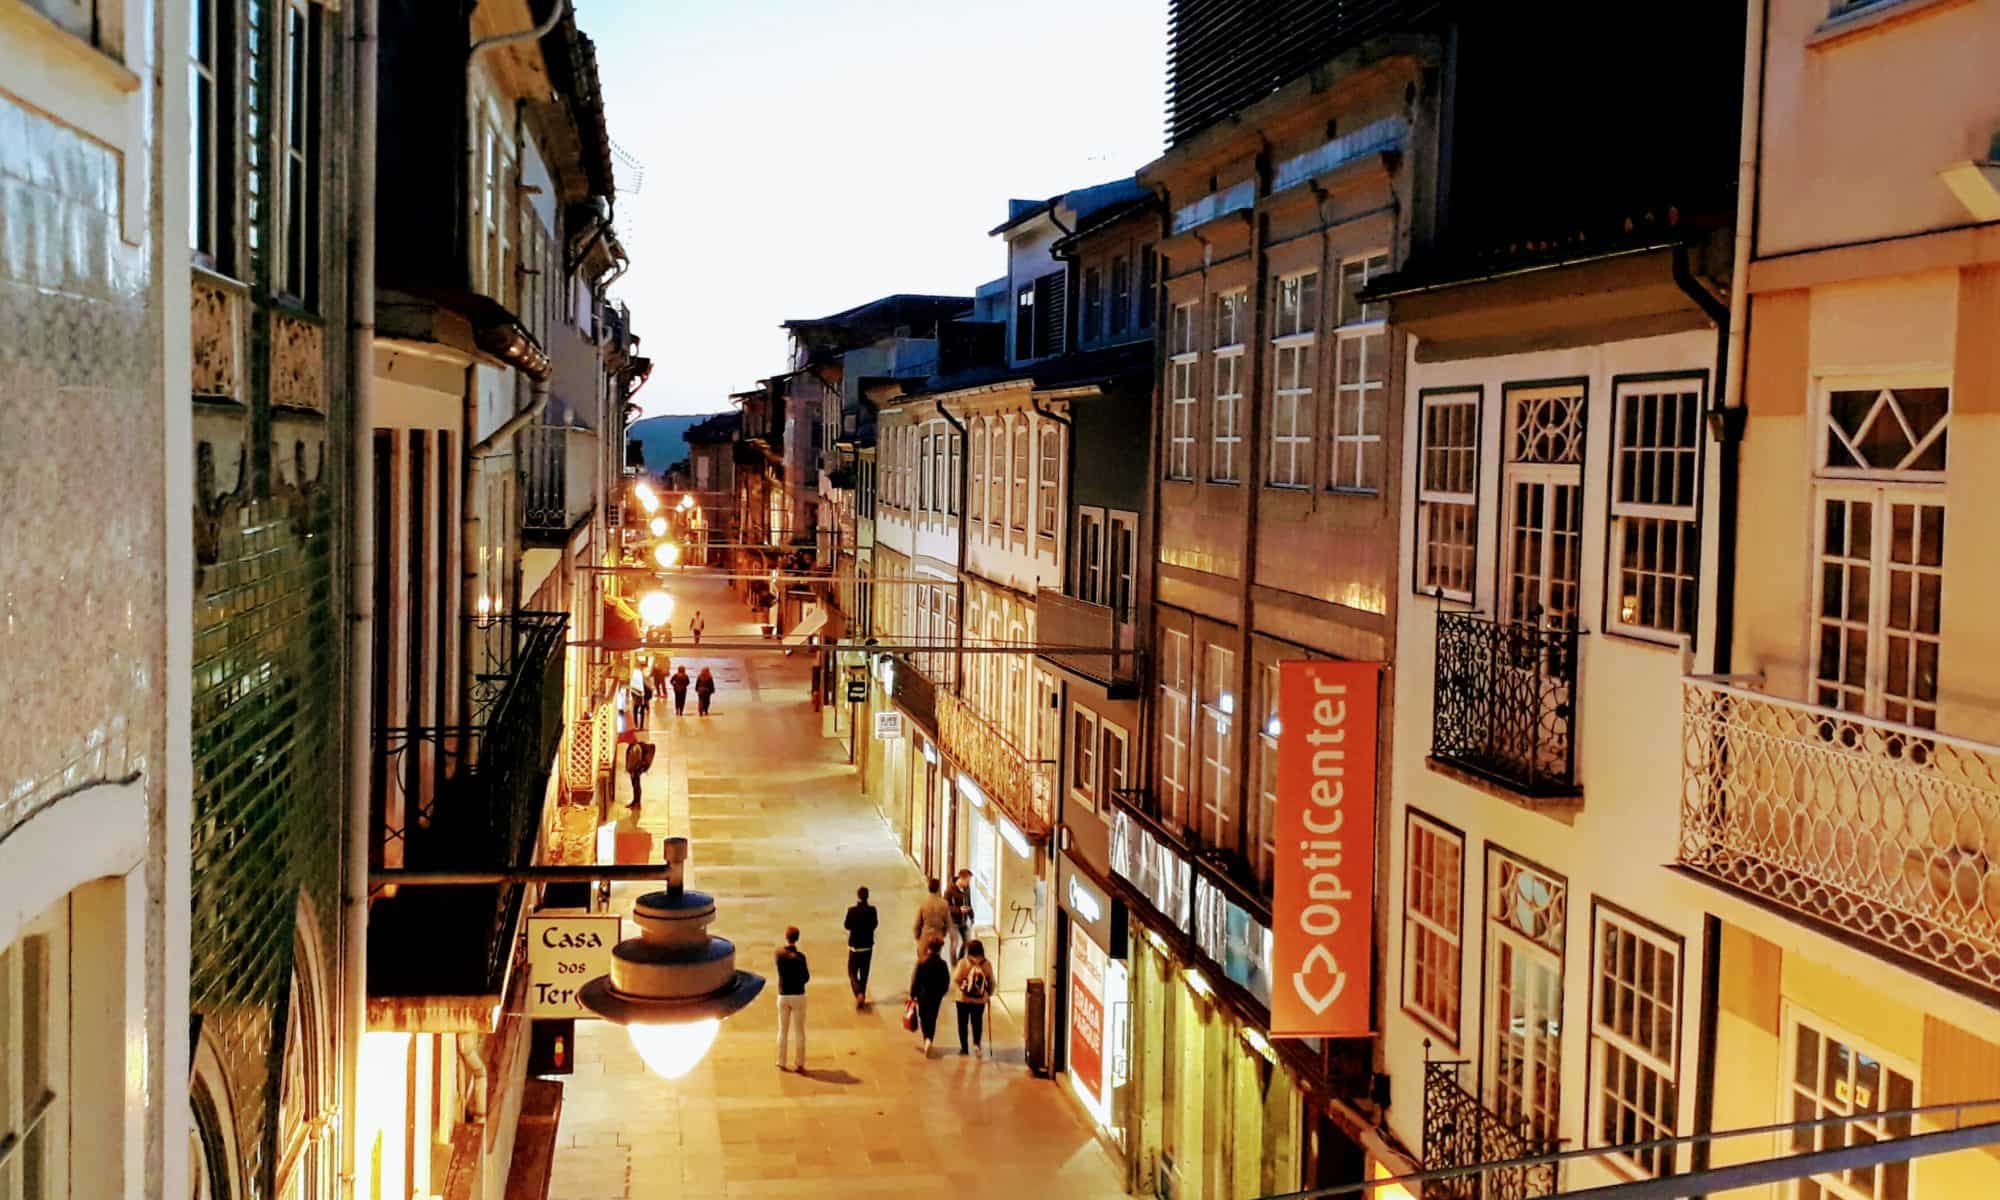 Sehenswürdigkeiten in Braga: Altstadt und Bom Jesus